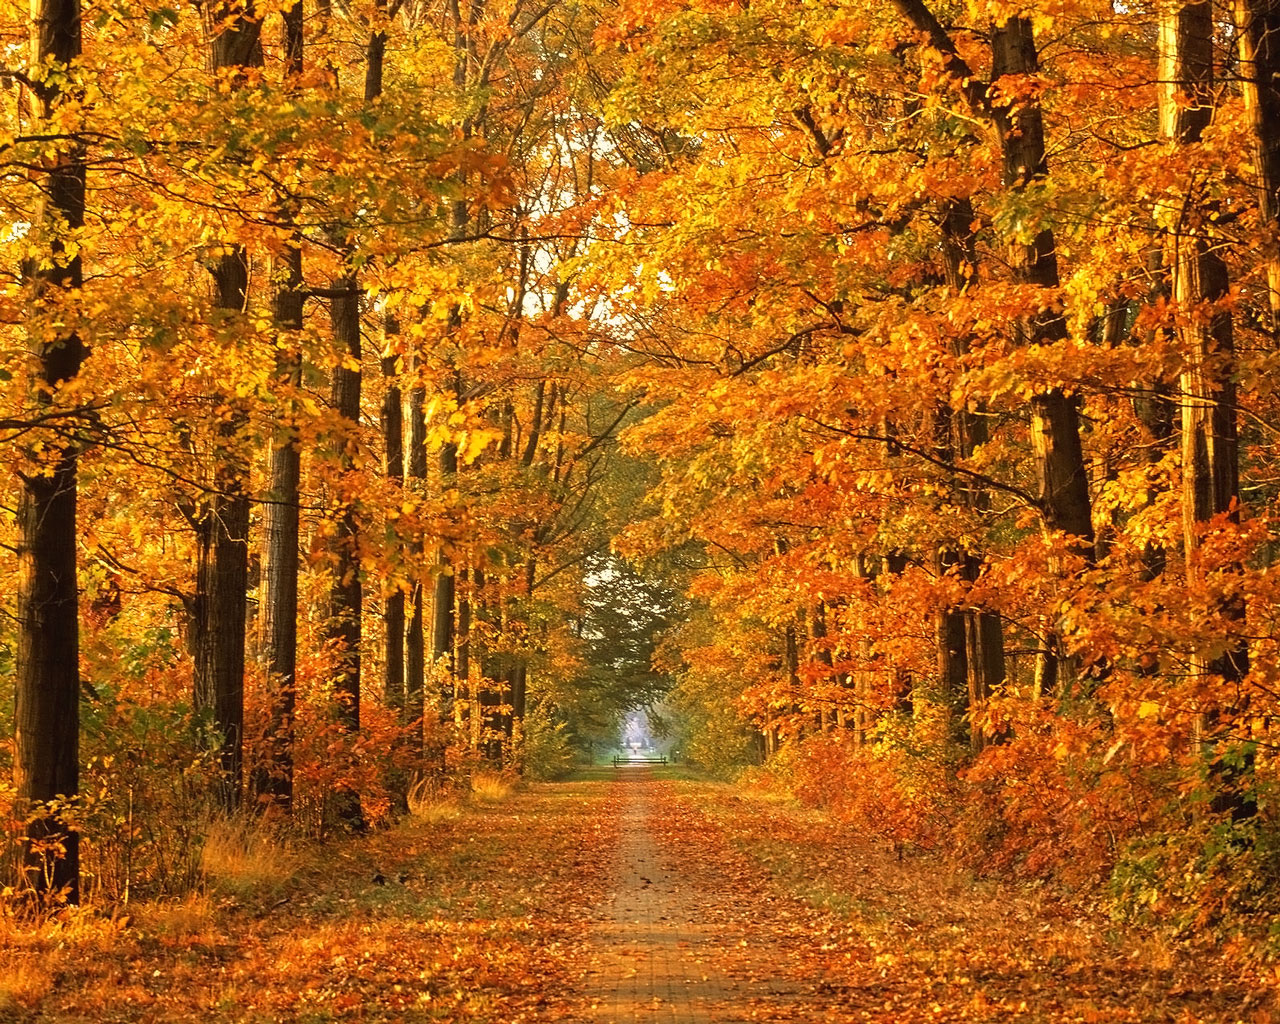  autumn wallpaper widescreen autumn forest wallpaper autumn wallpaper